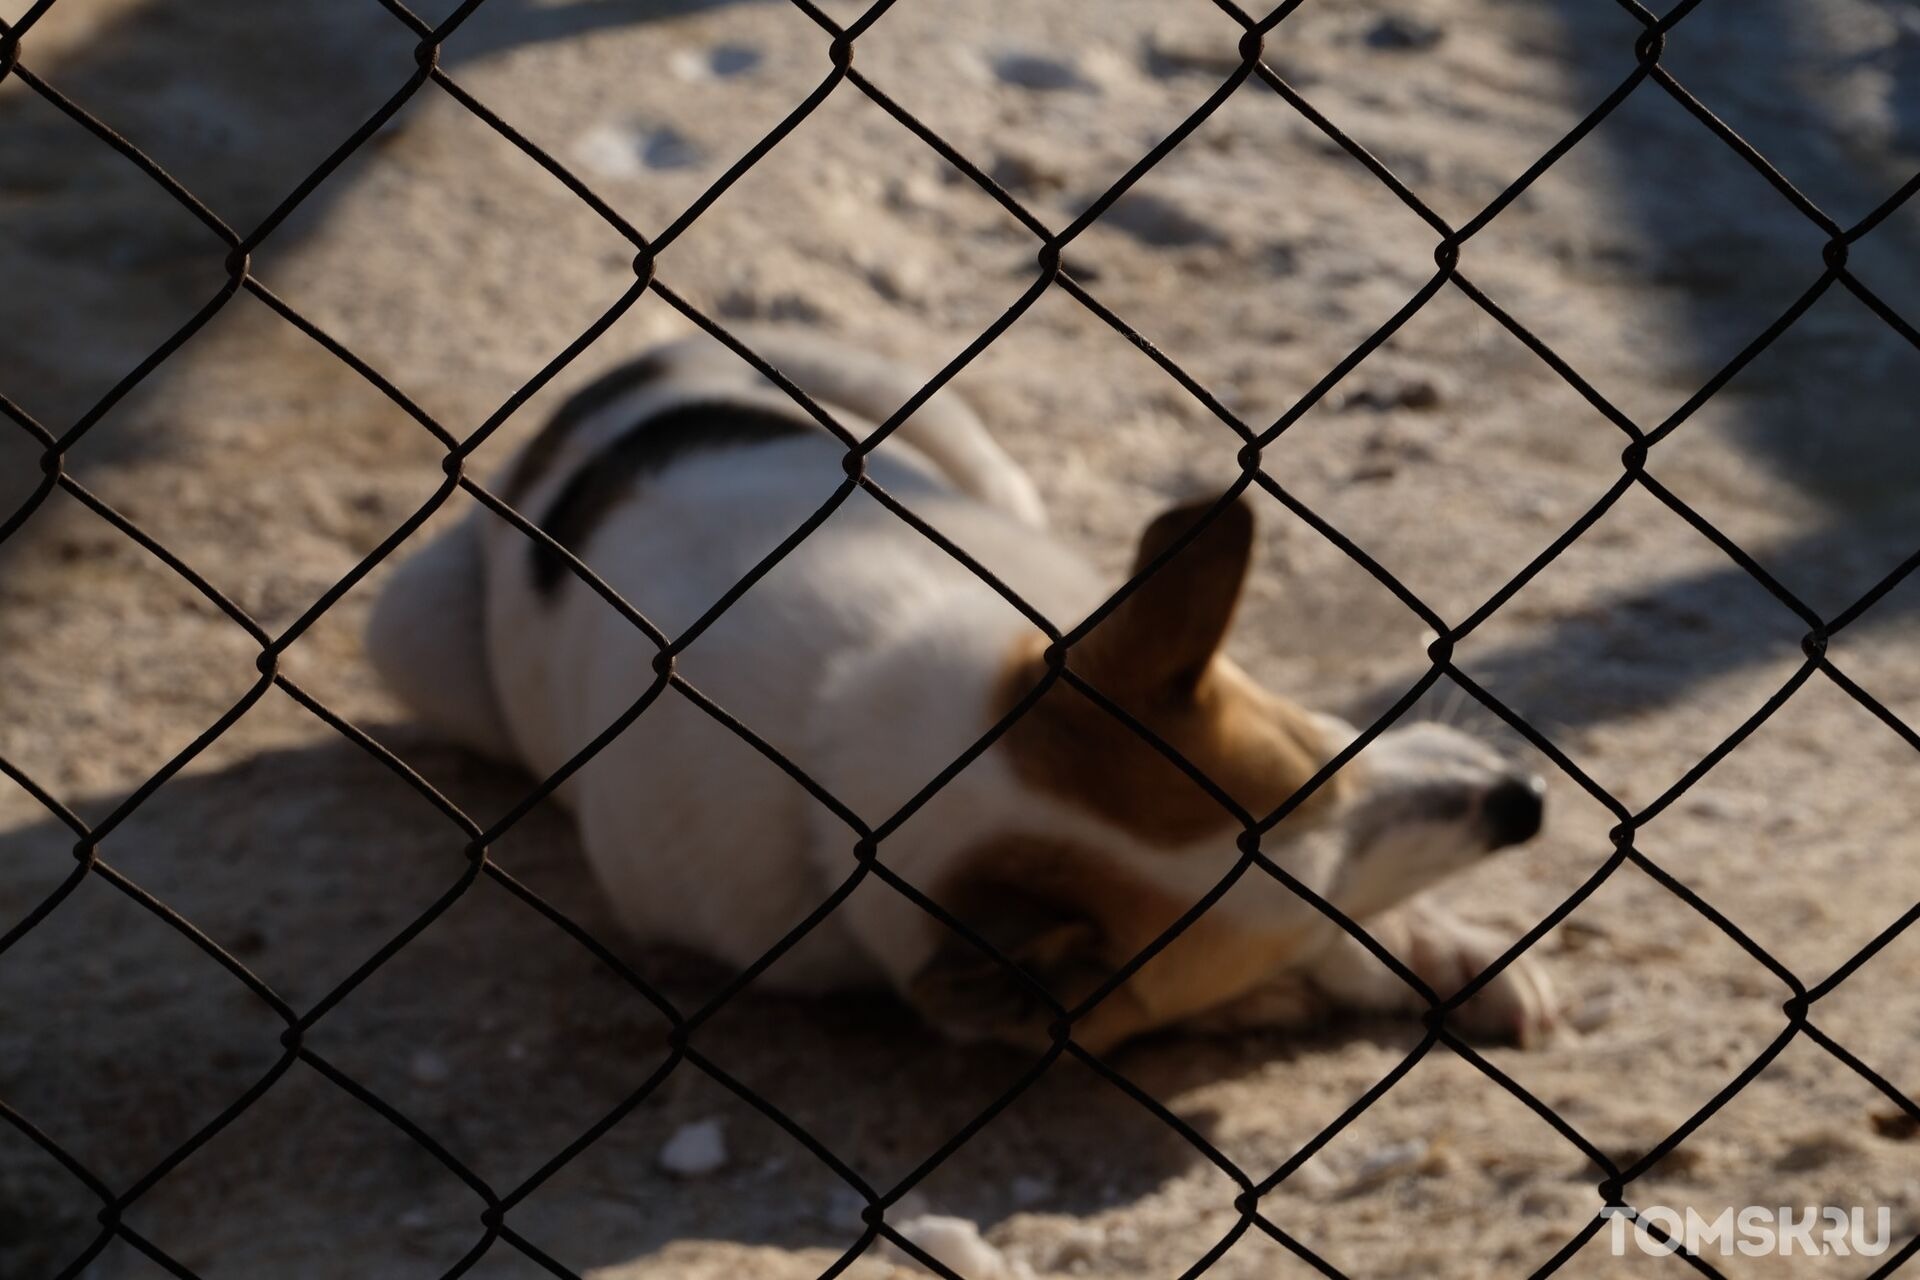 Мэрия Томска признала, что у нового подрядчика по отлову бездомных собак «есть очевидные недостатки»